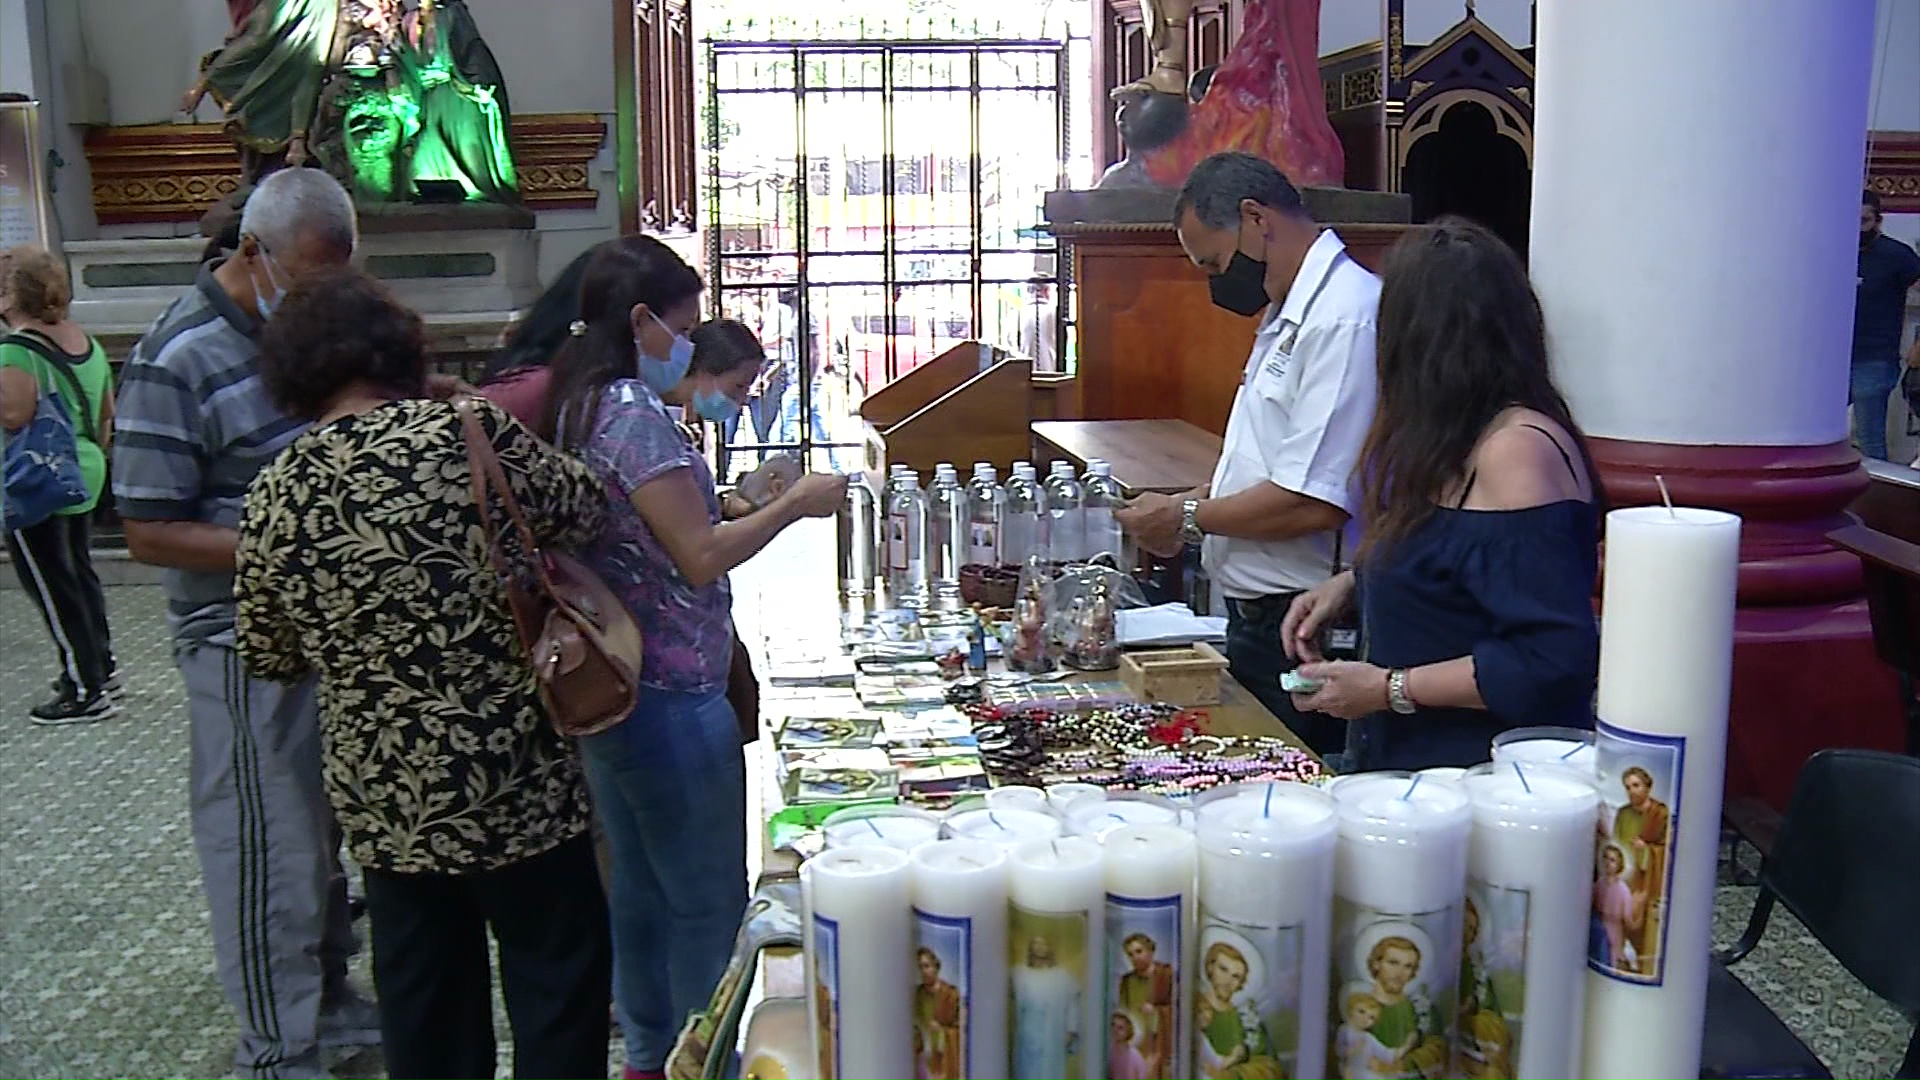 Altos precios de productos tradicionales en Semana Santa